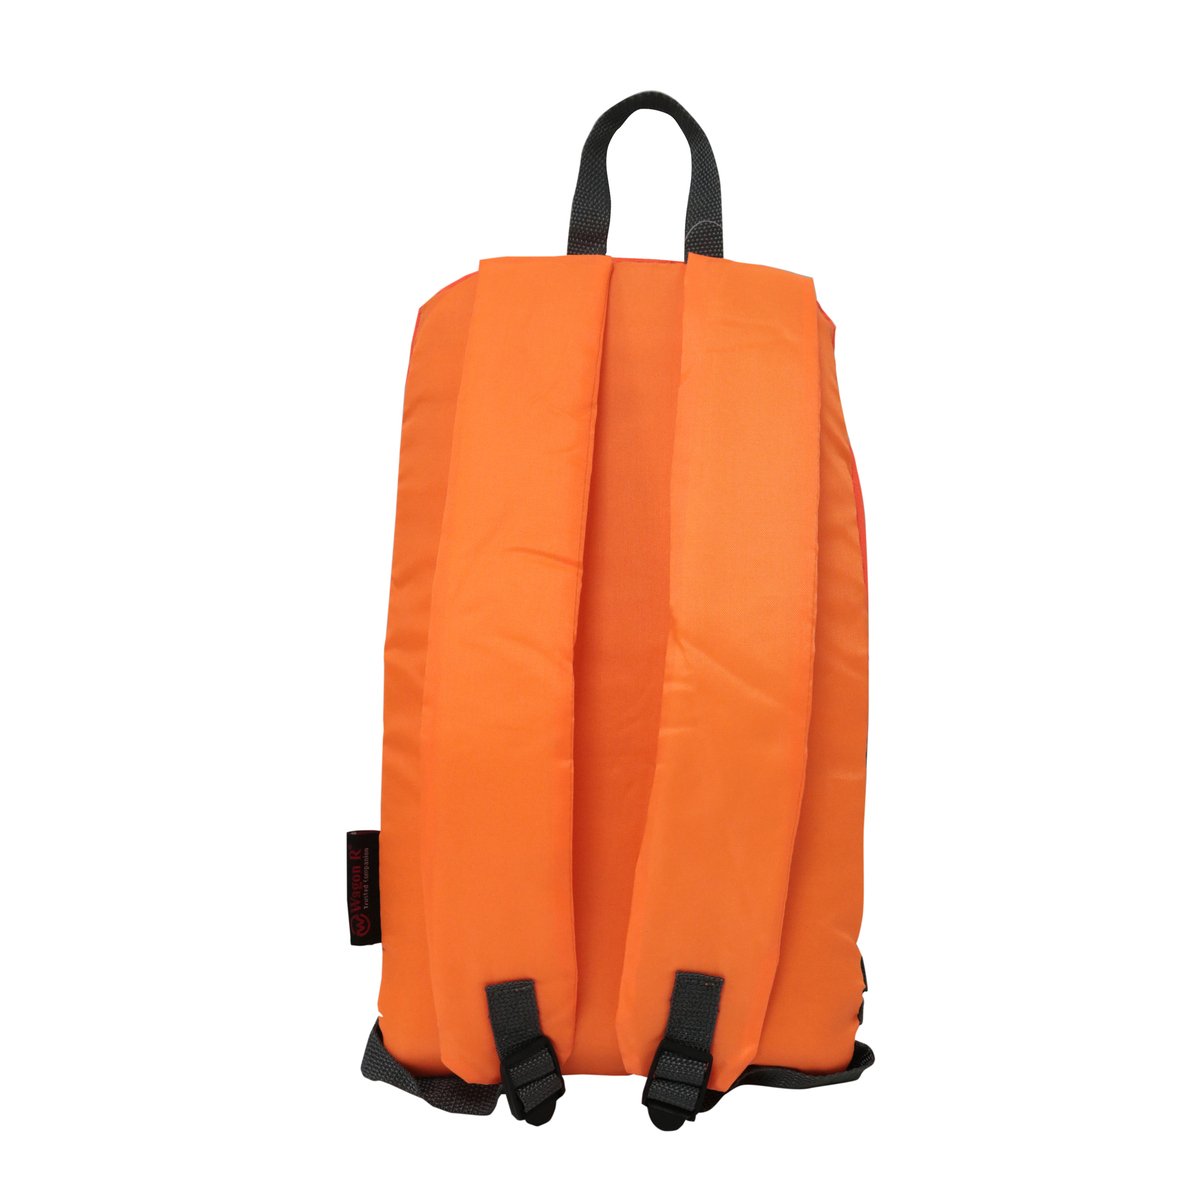 Wagon-R Back Pack Bag JS-1863